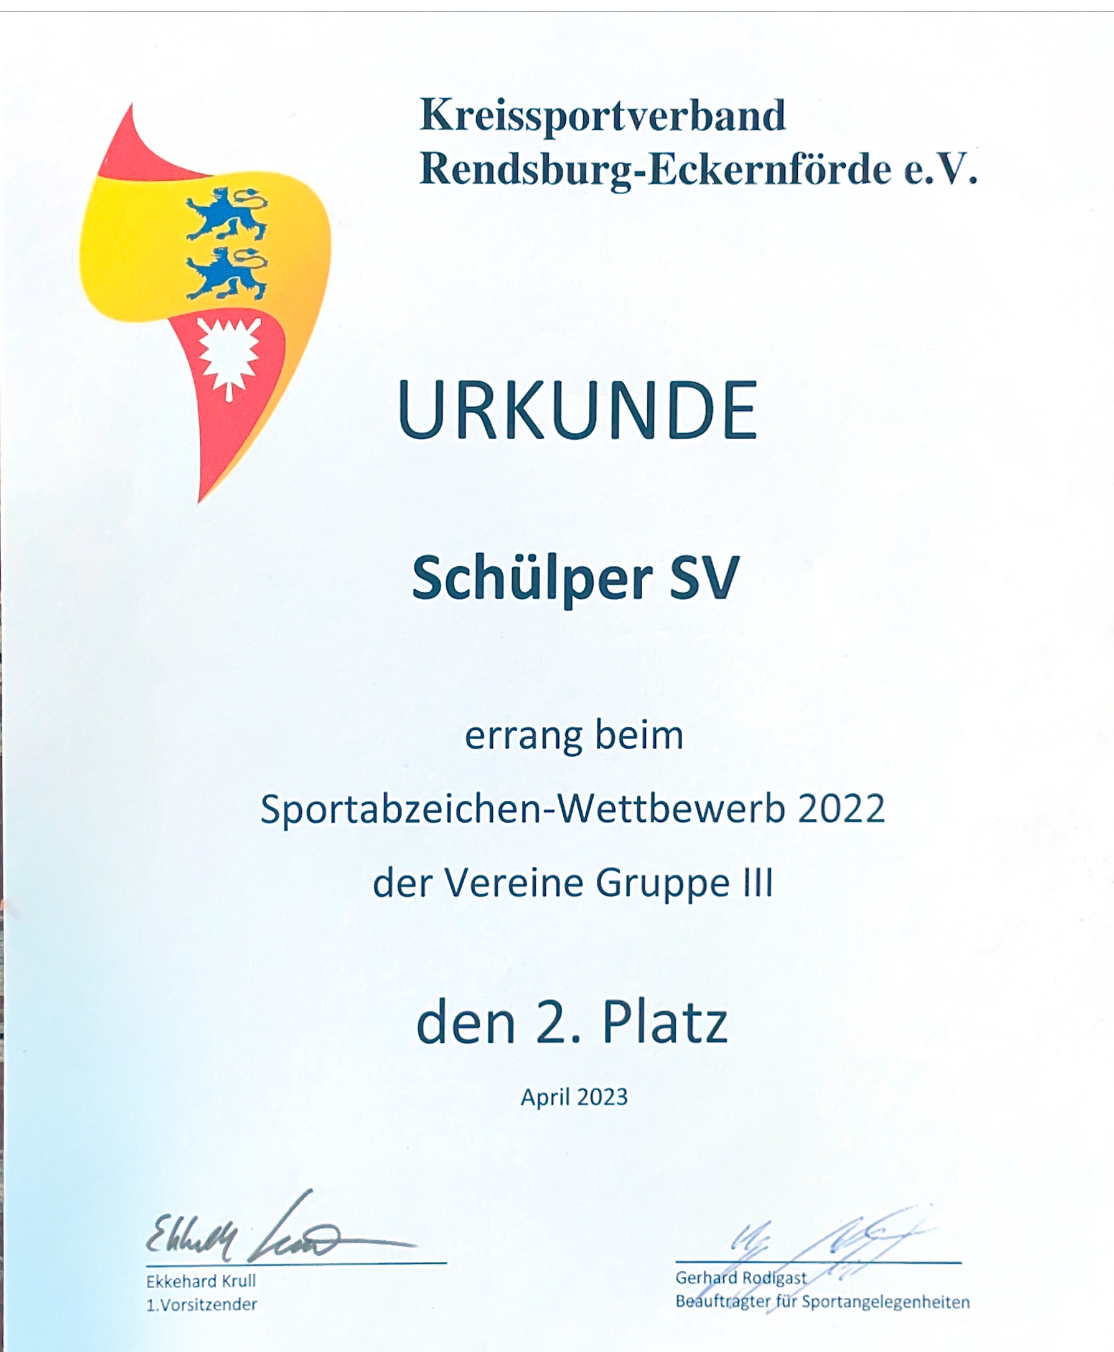 Urkunde zum zweiten Platz für den Schülper SV beimSportabzeichenwetbewerb in 2022 vom Kreissportverband